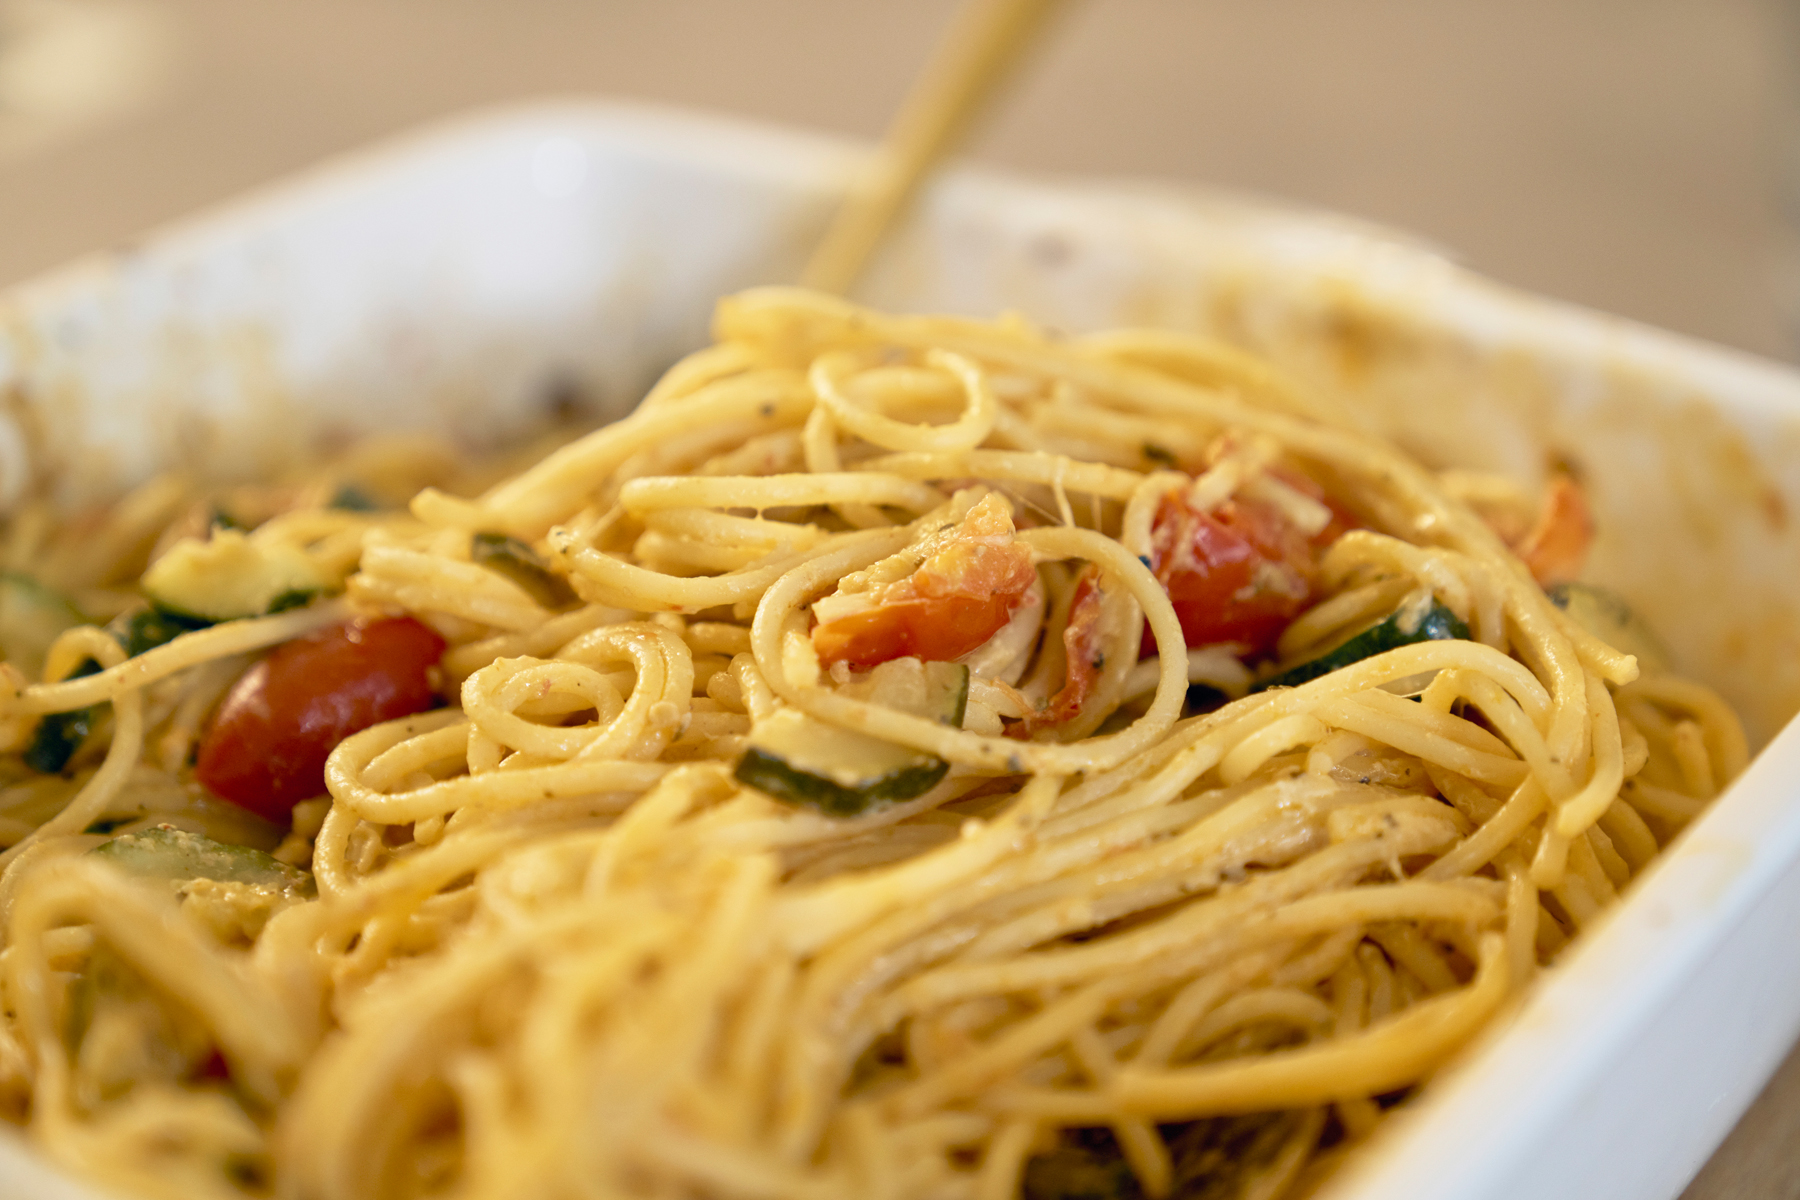 Découvrez comment créer un plat délicieux avec quelques ingrédients : Légumes au four avec spaghetti et burrata – parfait pour un repas rapide mais impressionnant.